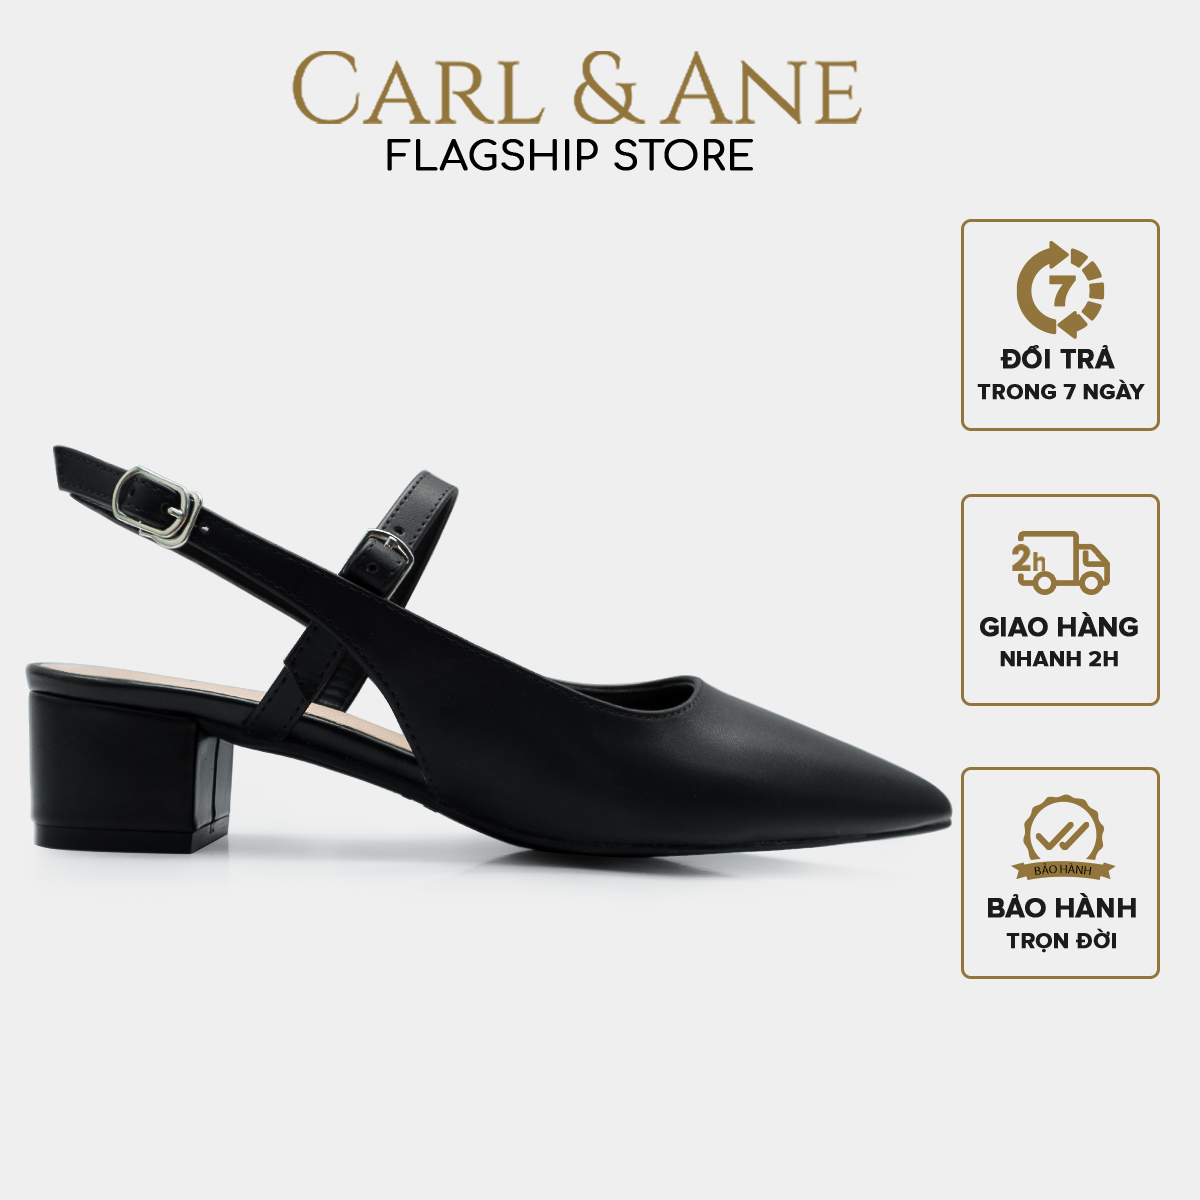 Carl & Ane - Giày cao gót mũi nhọn kiểu dáng thanh lịch cao 3,5cm màu đen - CL023